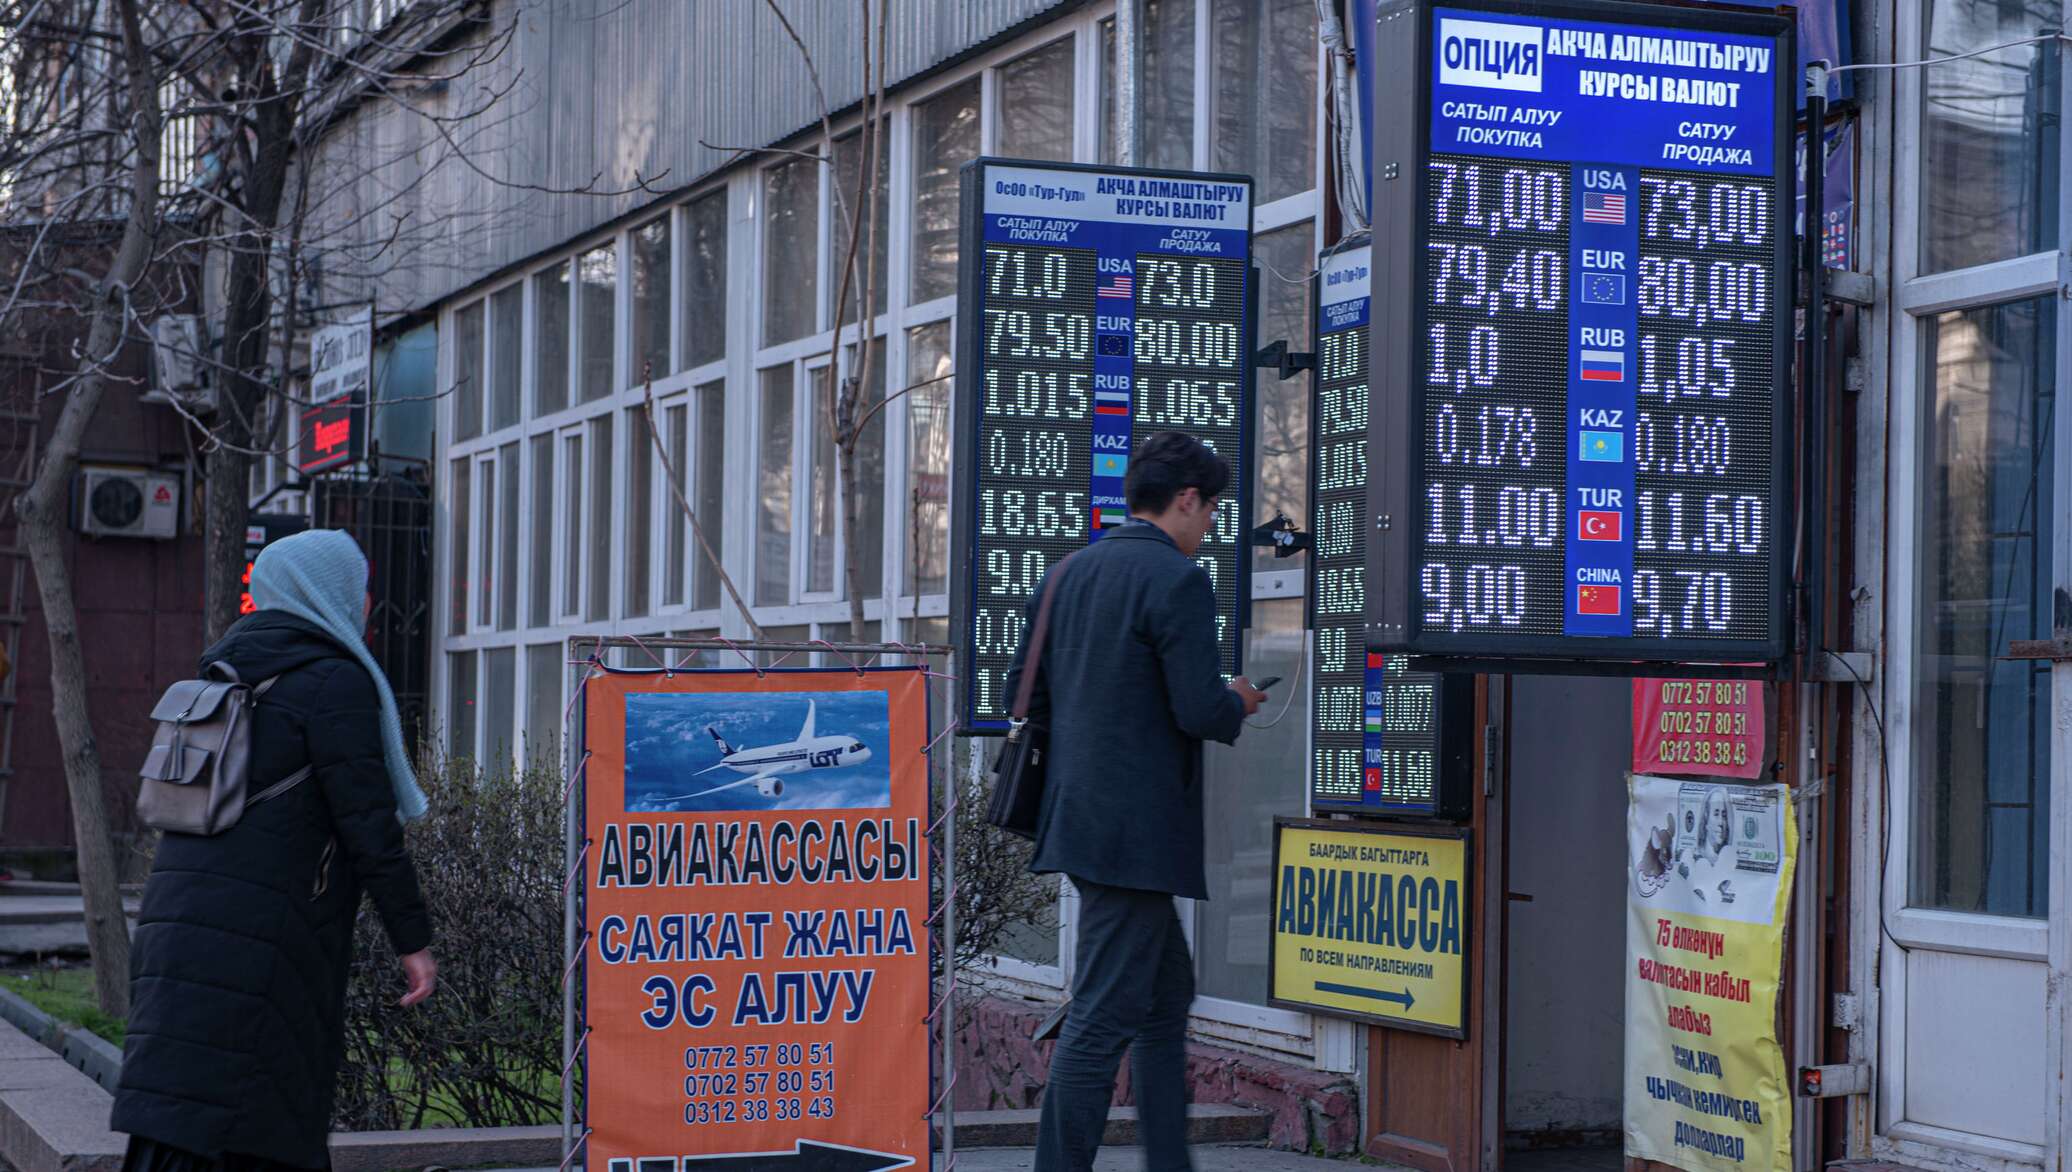 Рубль на сом киргизия сегодня бишкек. Обмен валюты. Курс валют. Валюта Кыргызстана. Доллар сом Киргизия.